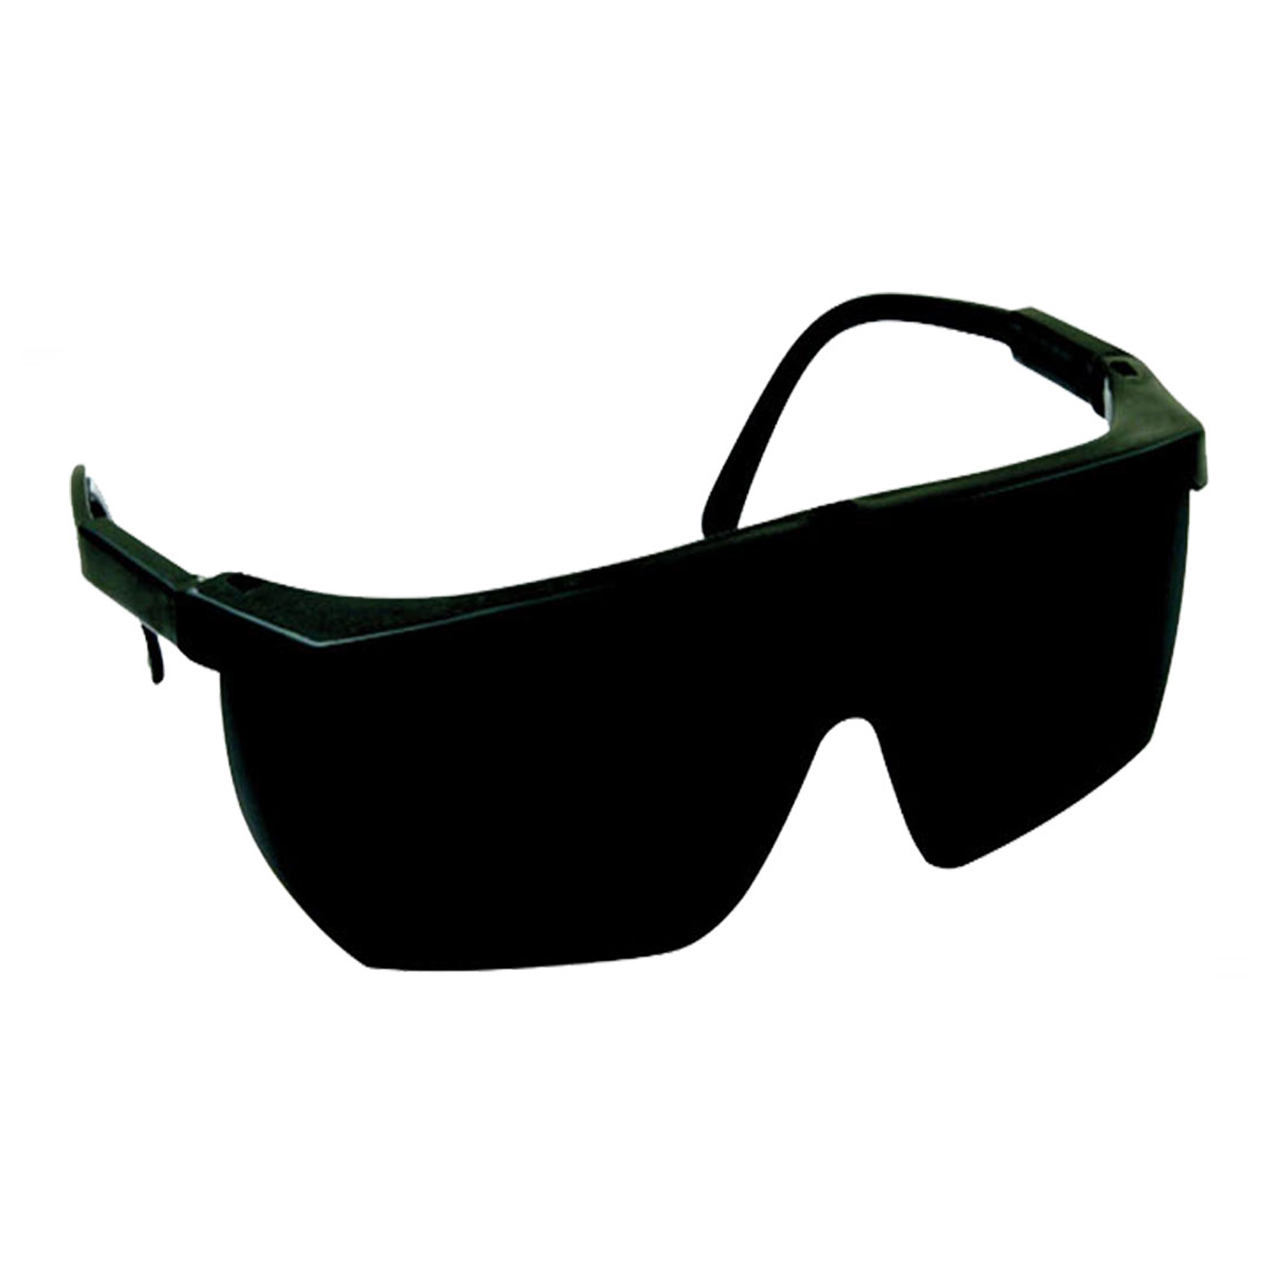 عینک جوشکاری بوش مدل Vi-vale09